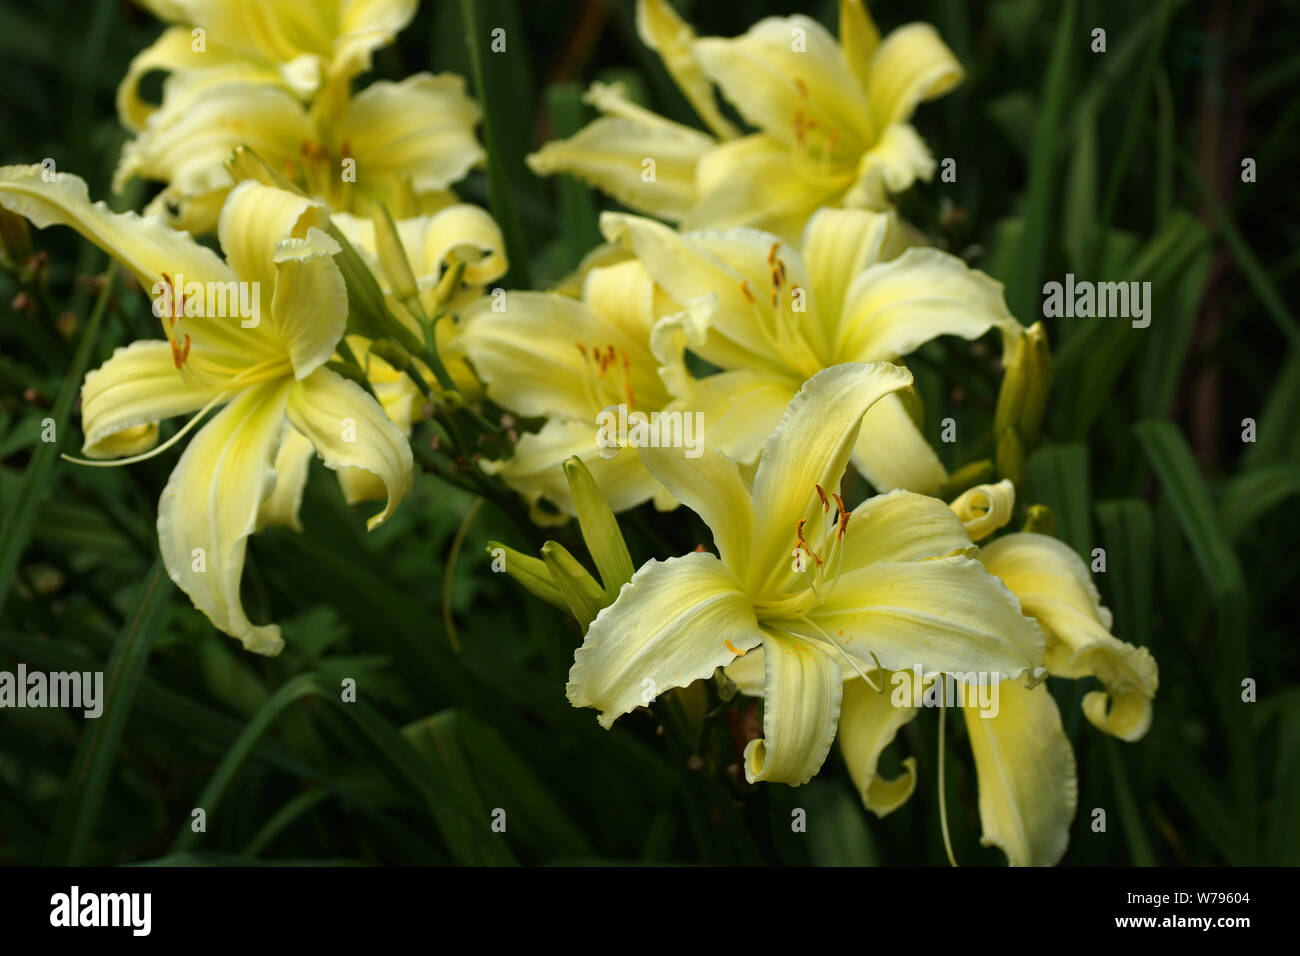 Schönen Taglilien im Sommergarten. Einfachheit in Motion Taglilien spinnen. Gelbe Taglilien blühen im öffnen. Vielen Blumen. Stockfoto